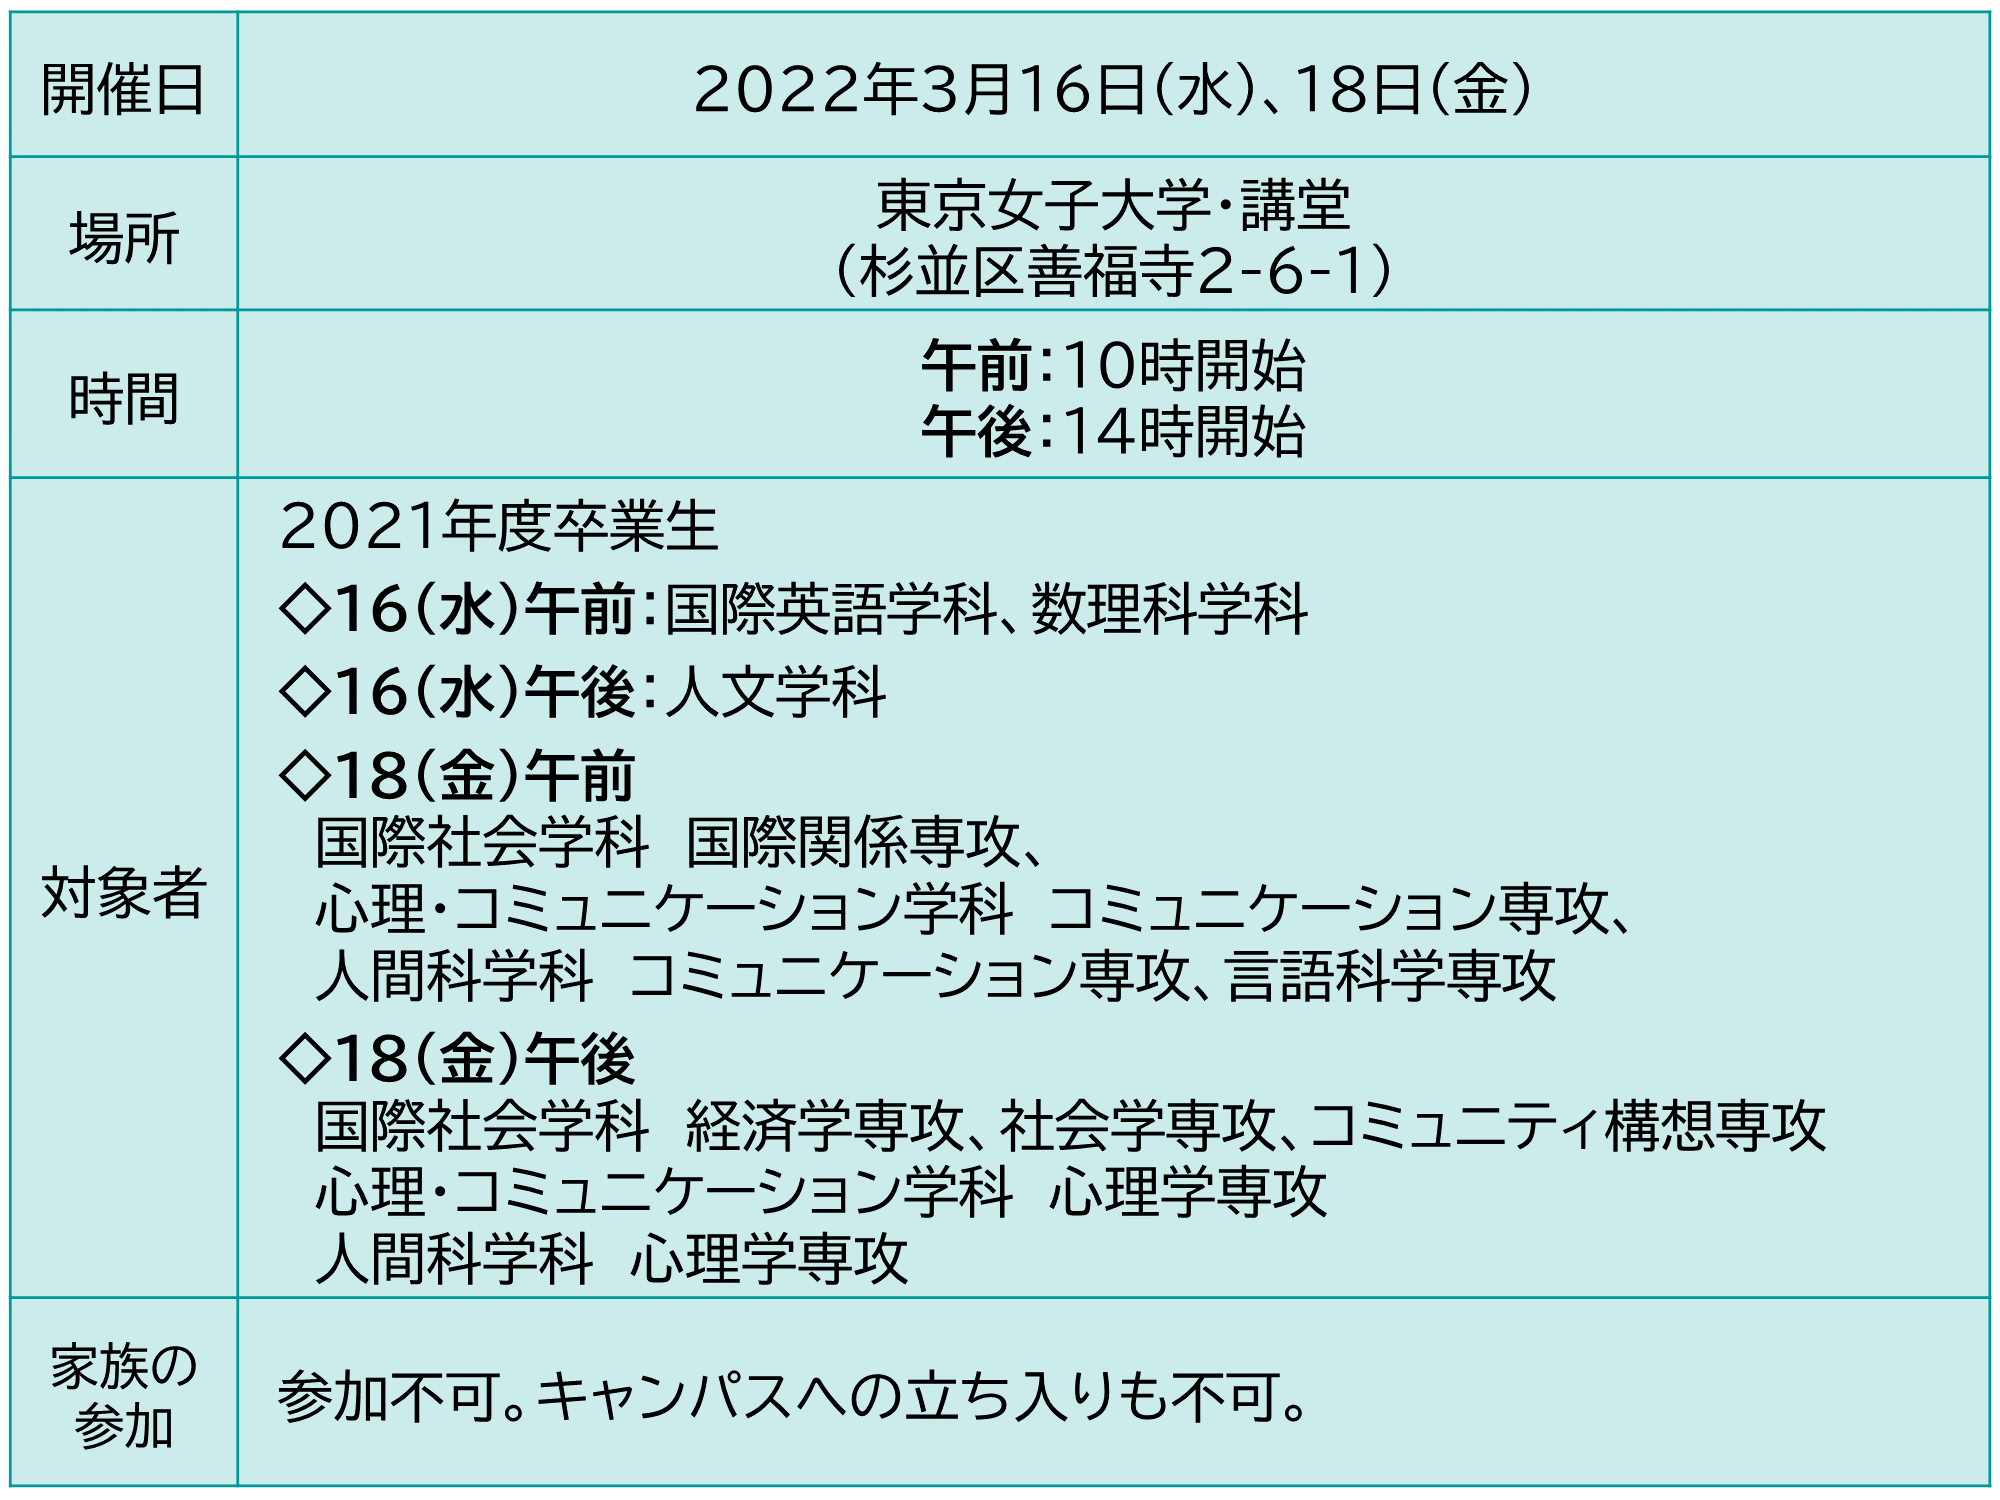 東京女子大学 2022年3月卒業式の詳細 2/22更新